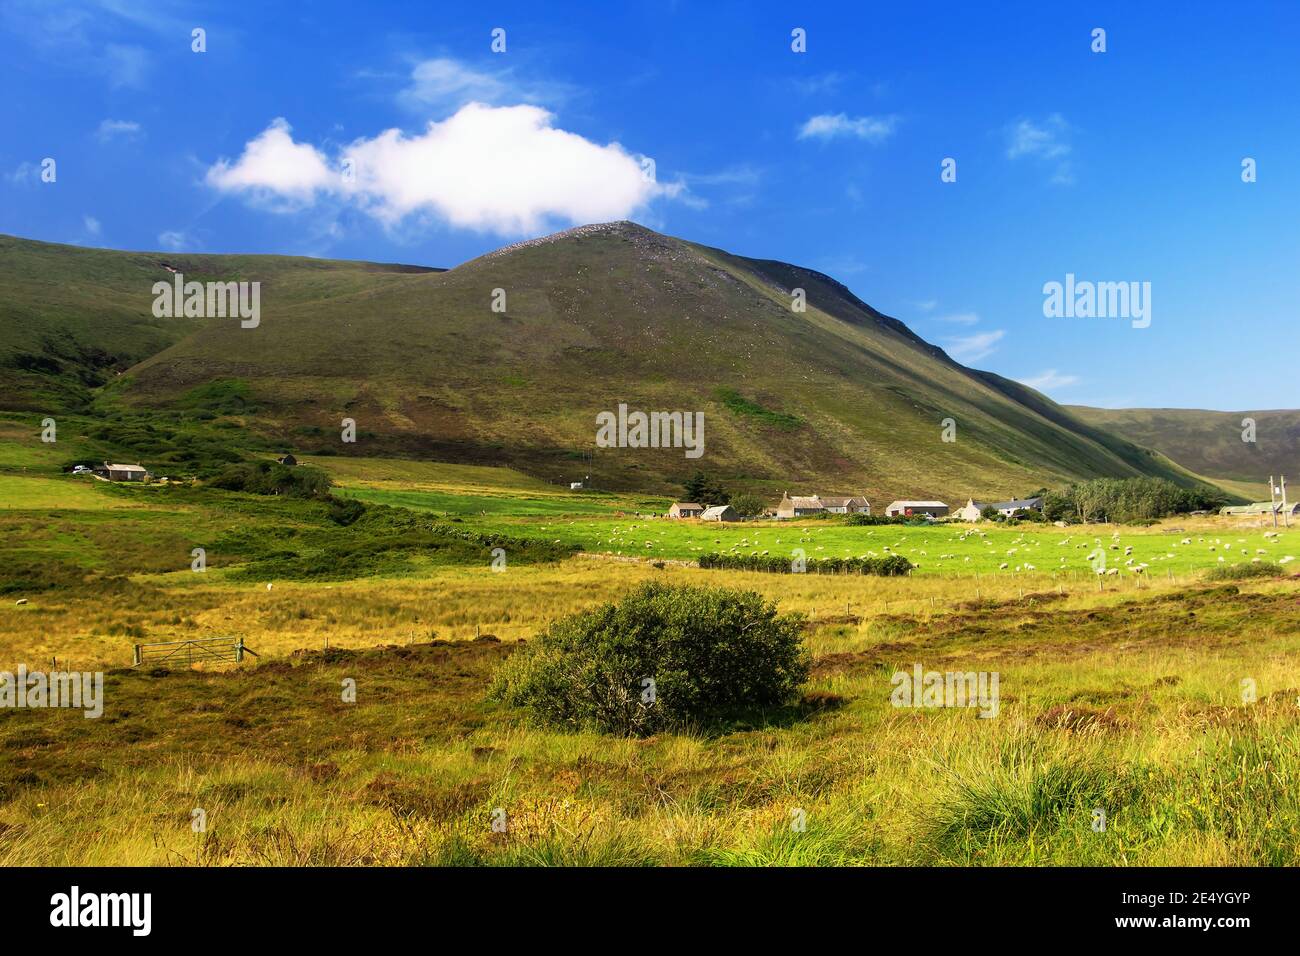 Gran colina marrón con plantas verdes en primer plano y cielo azul, nubes blancas y casas de piedra construidas en la isla escocesa Hoy en Orkney Foto de stock